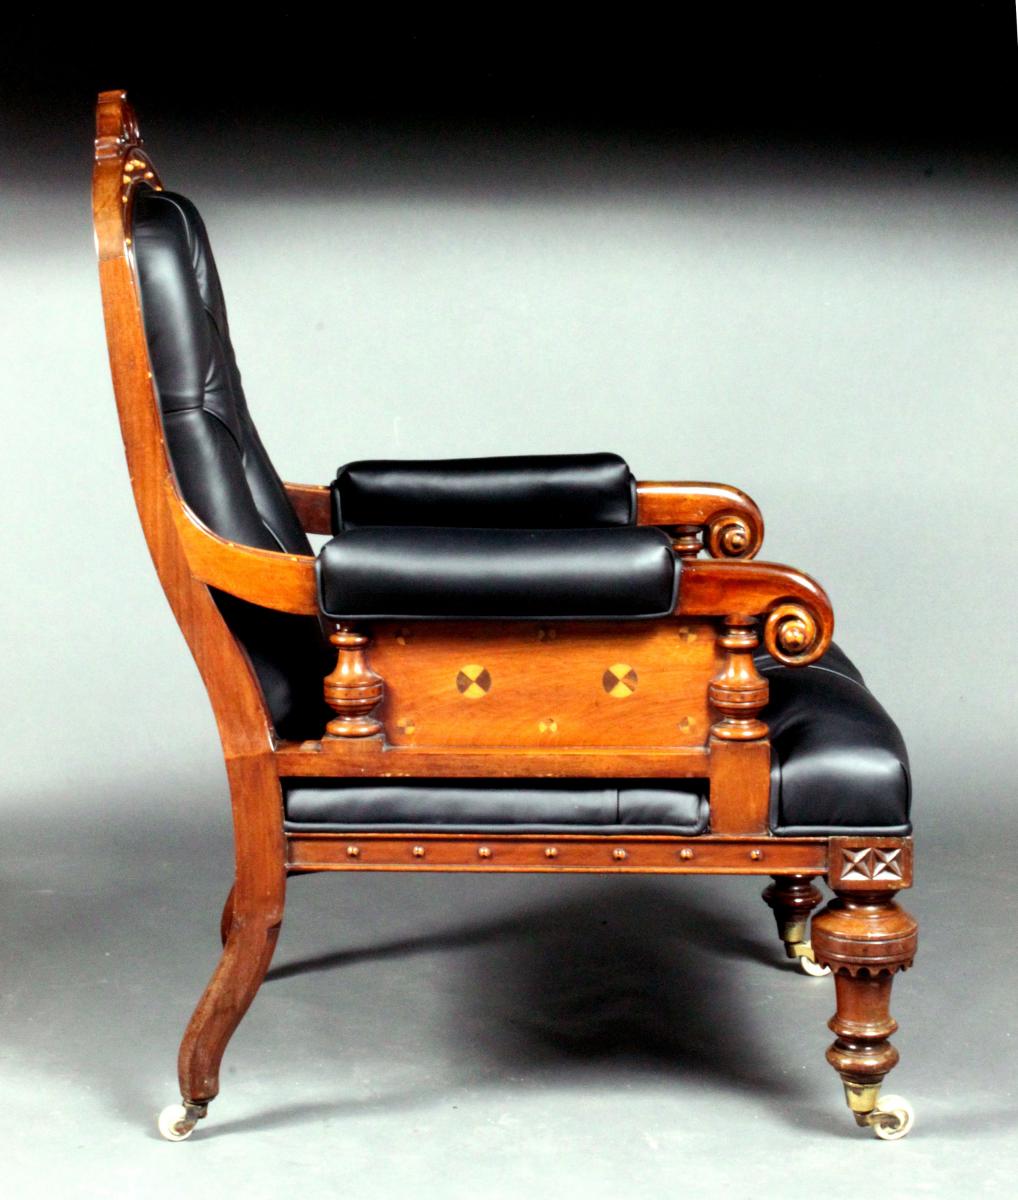 Victorian arm chair